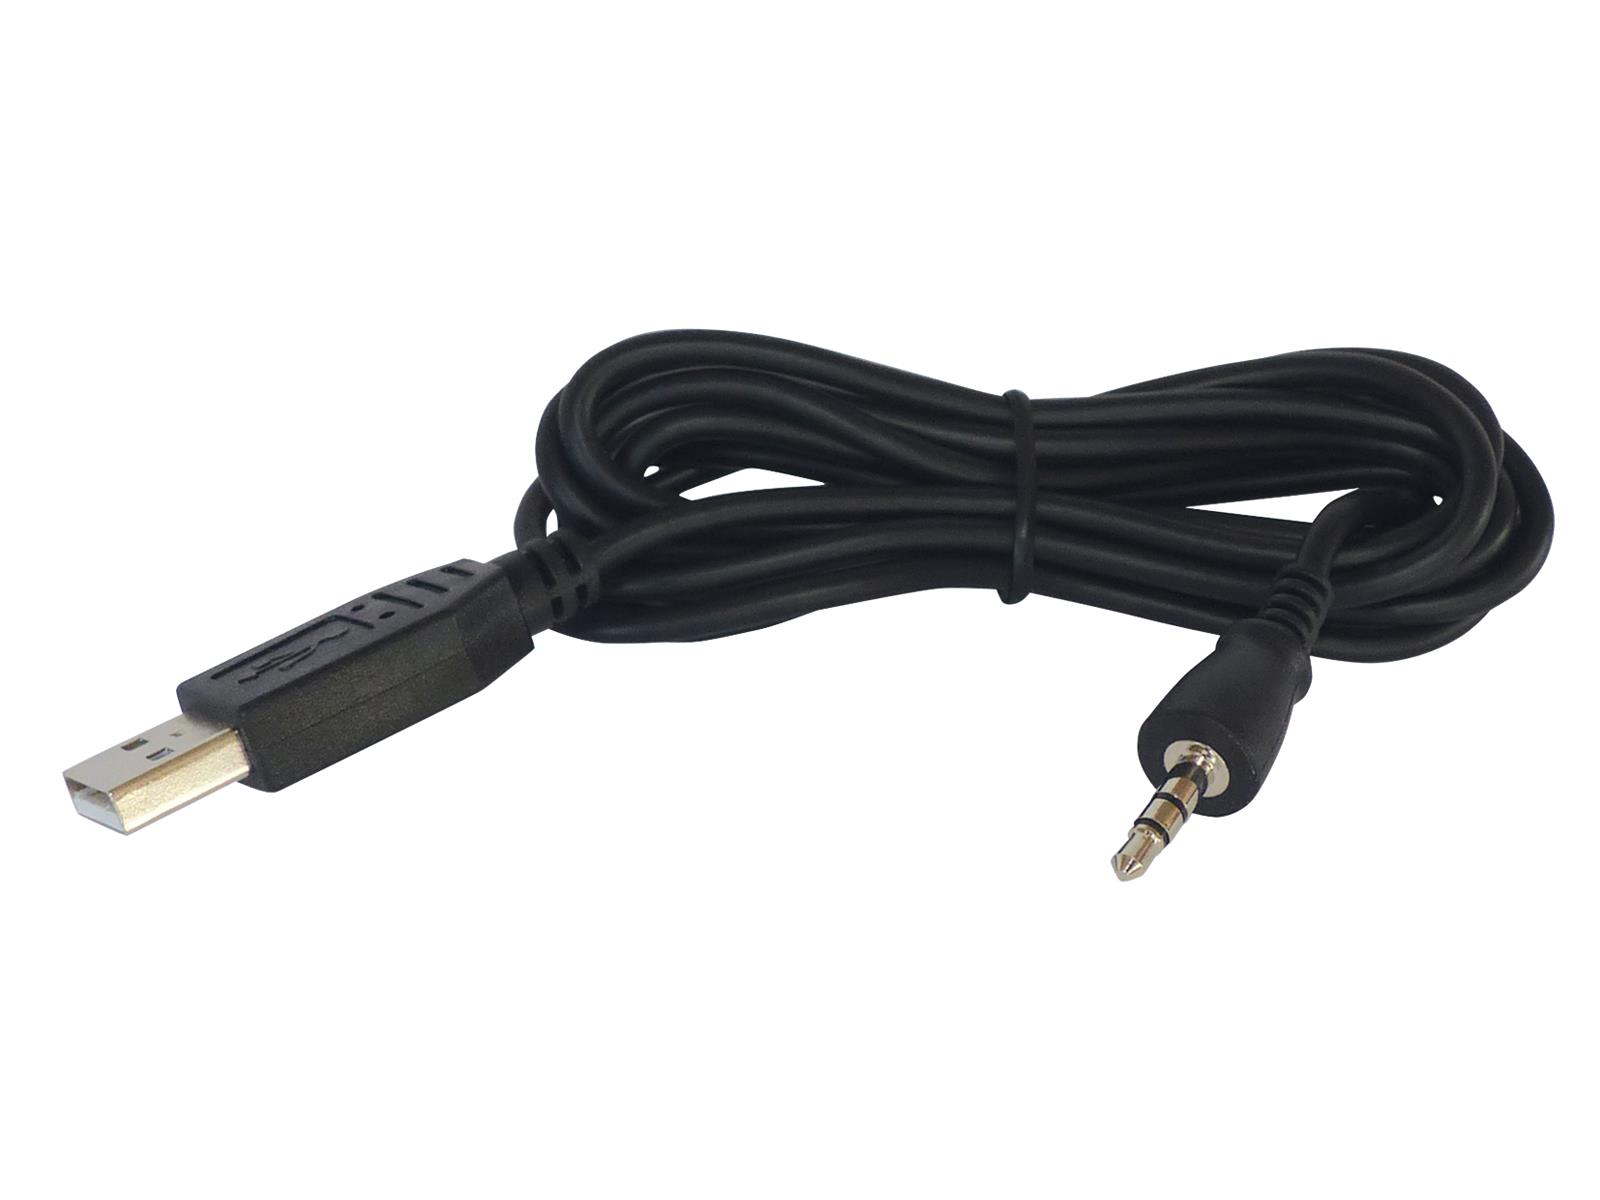 USB-Lötkolben McPower, 5V, 8W, max. 450 °C, Zuleitung ca. 150cm